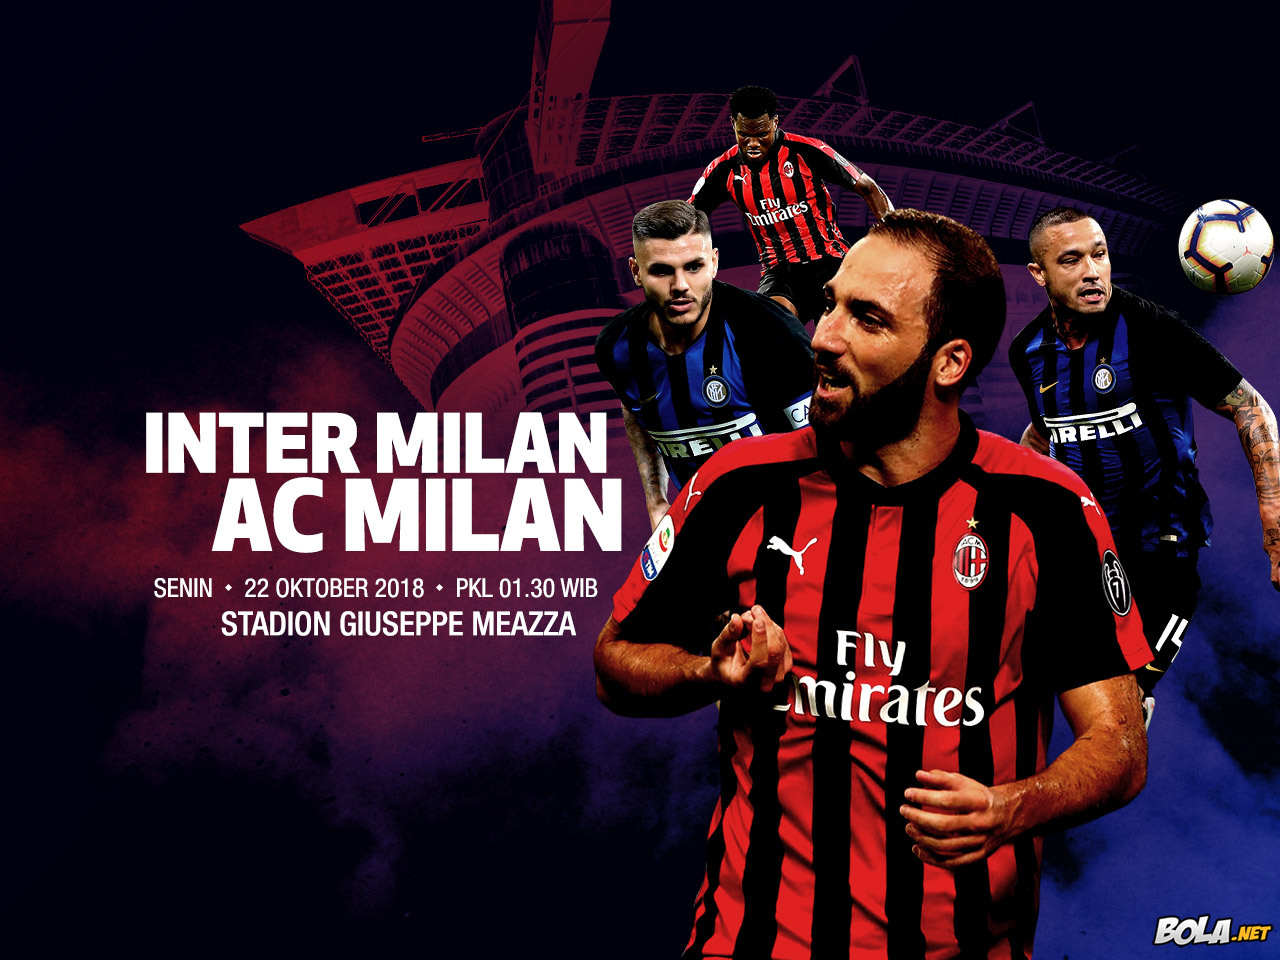 Deskripsi : Wallpaper Inter Milan Vs Ac Milan, size: 1280x960